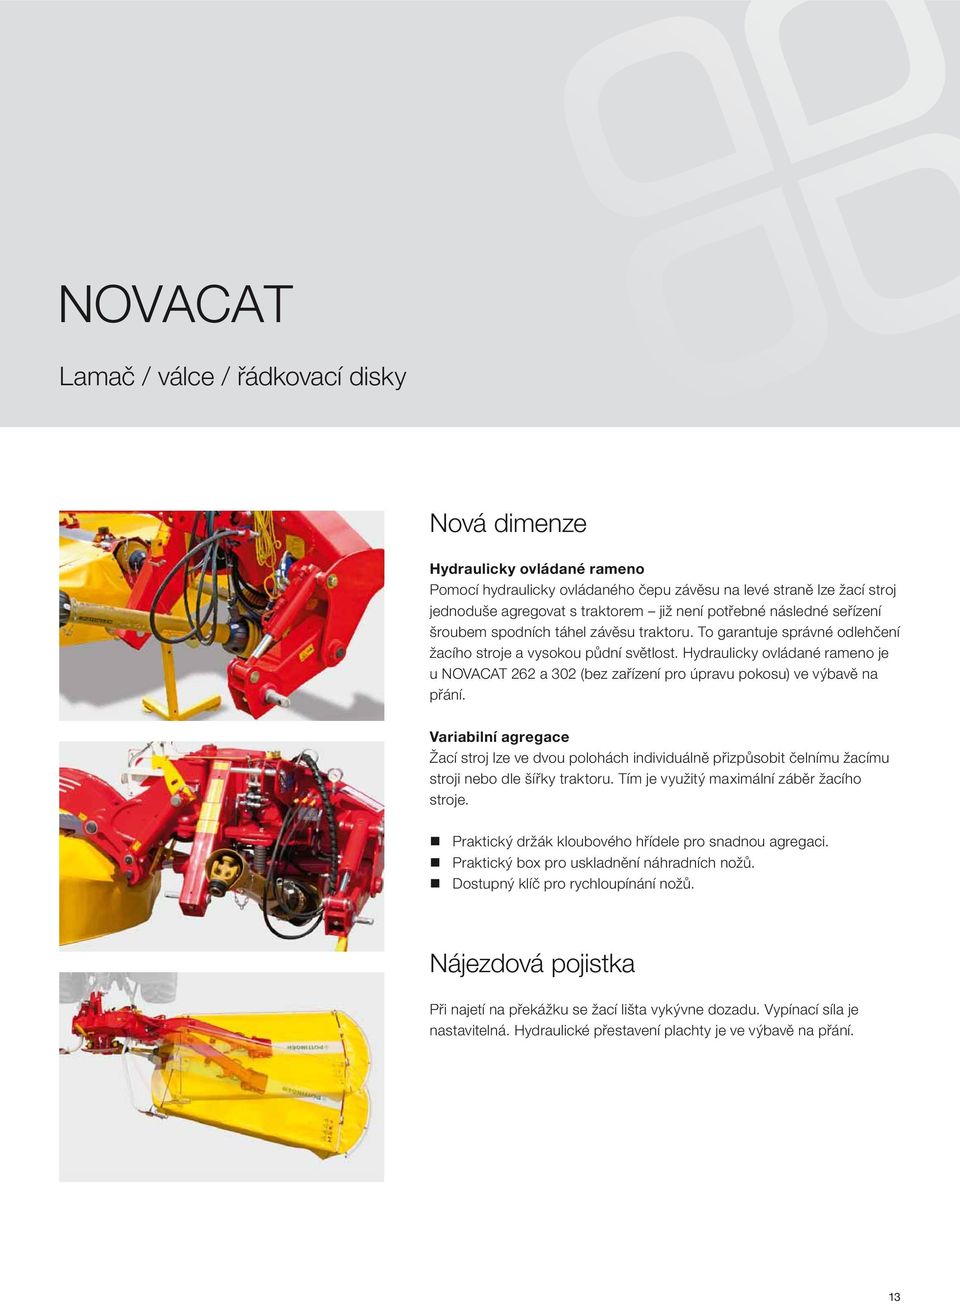 Hydraulicky ovládané rameno je u NOVACAT 262 a 302 (bez zařízení pro úpravu pokosu) ve výbavě na přání.